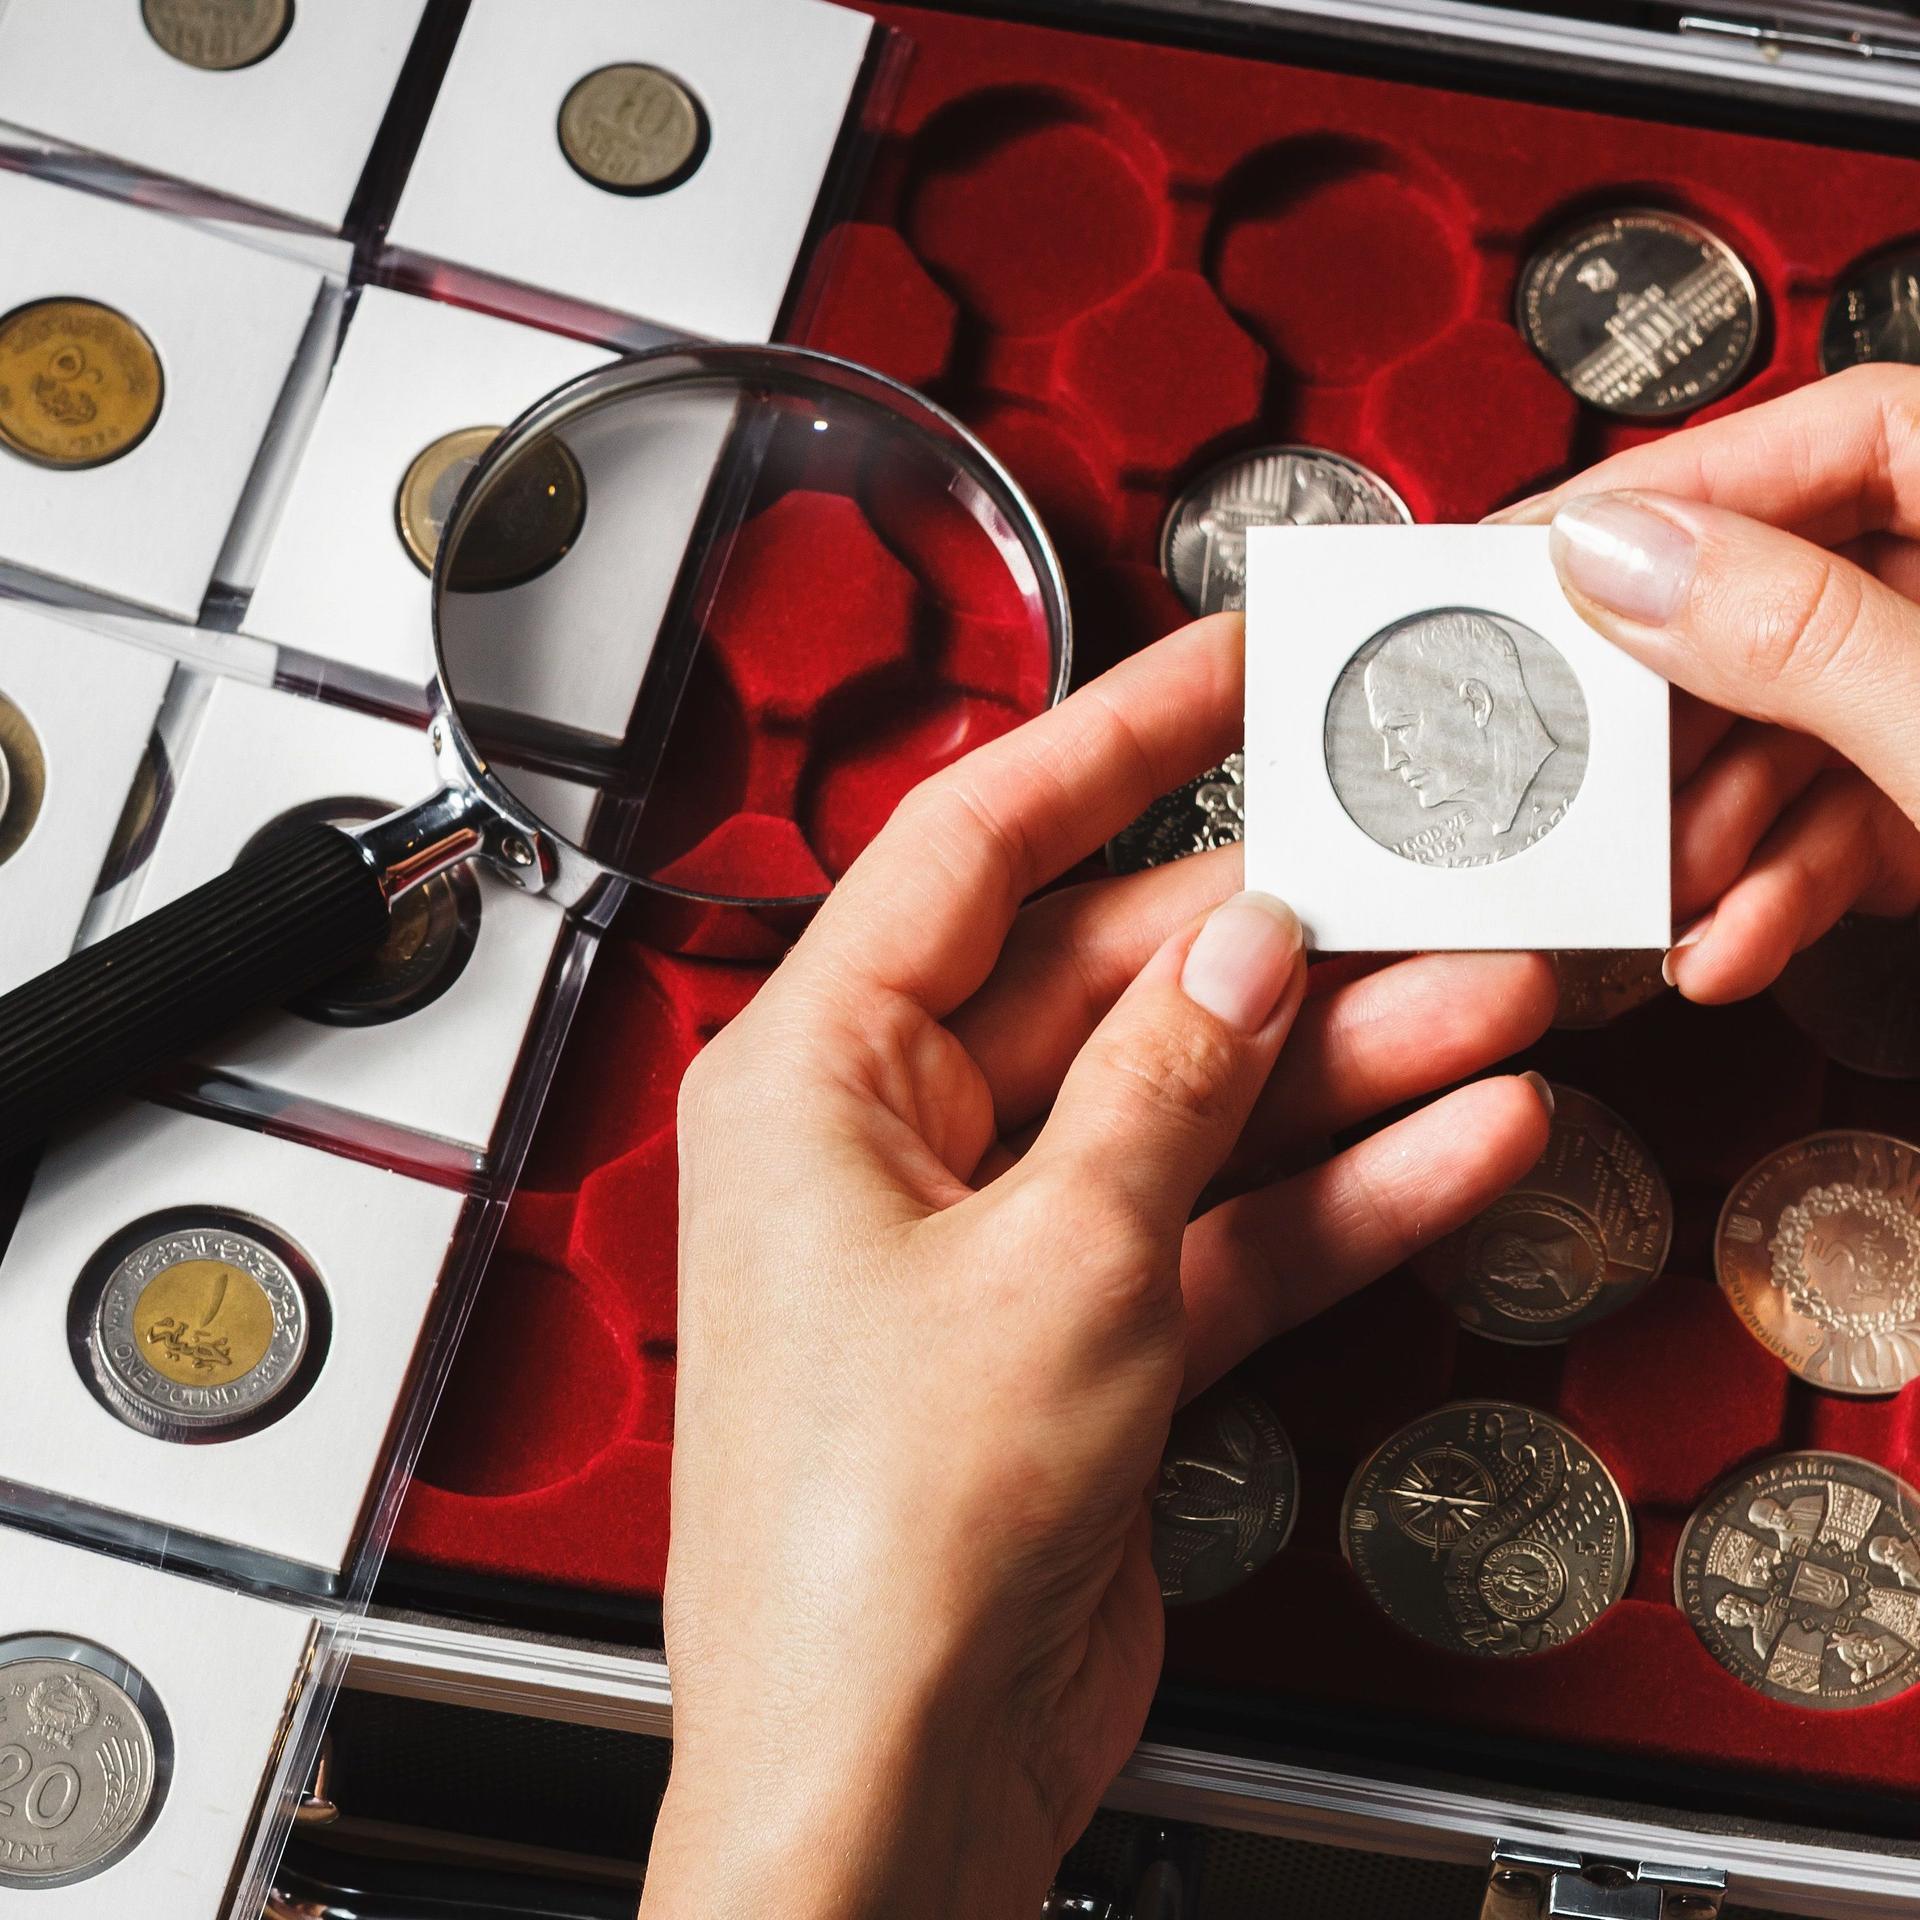 Nahaufnahme zweier Hände die eine eingepackte Sammelmünze halten. Links eine Lupe und Seite mit Münzen in einzelnen kleinen Taschen. Rechts eine Schachtel mit Sammelmünzen. 